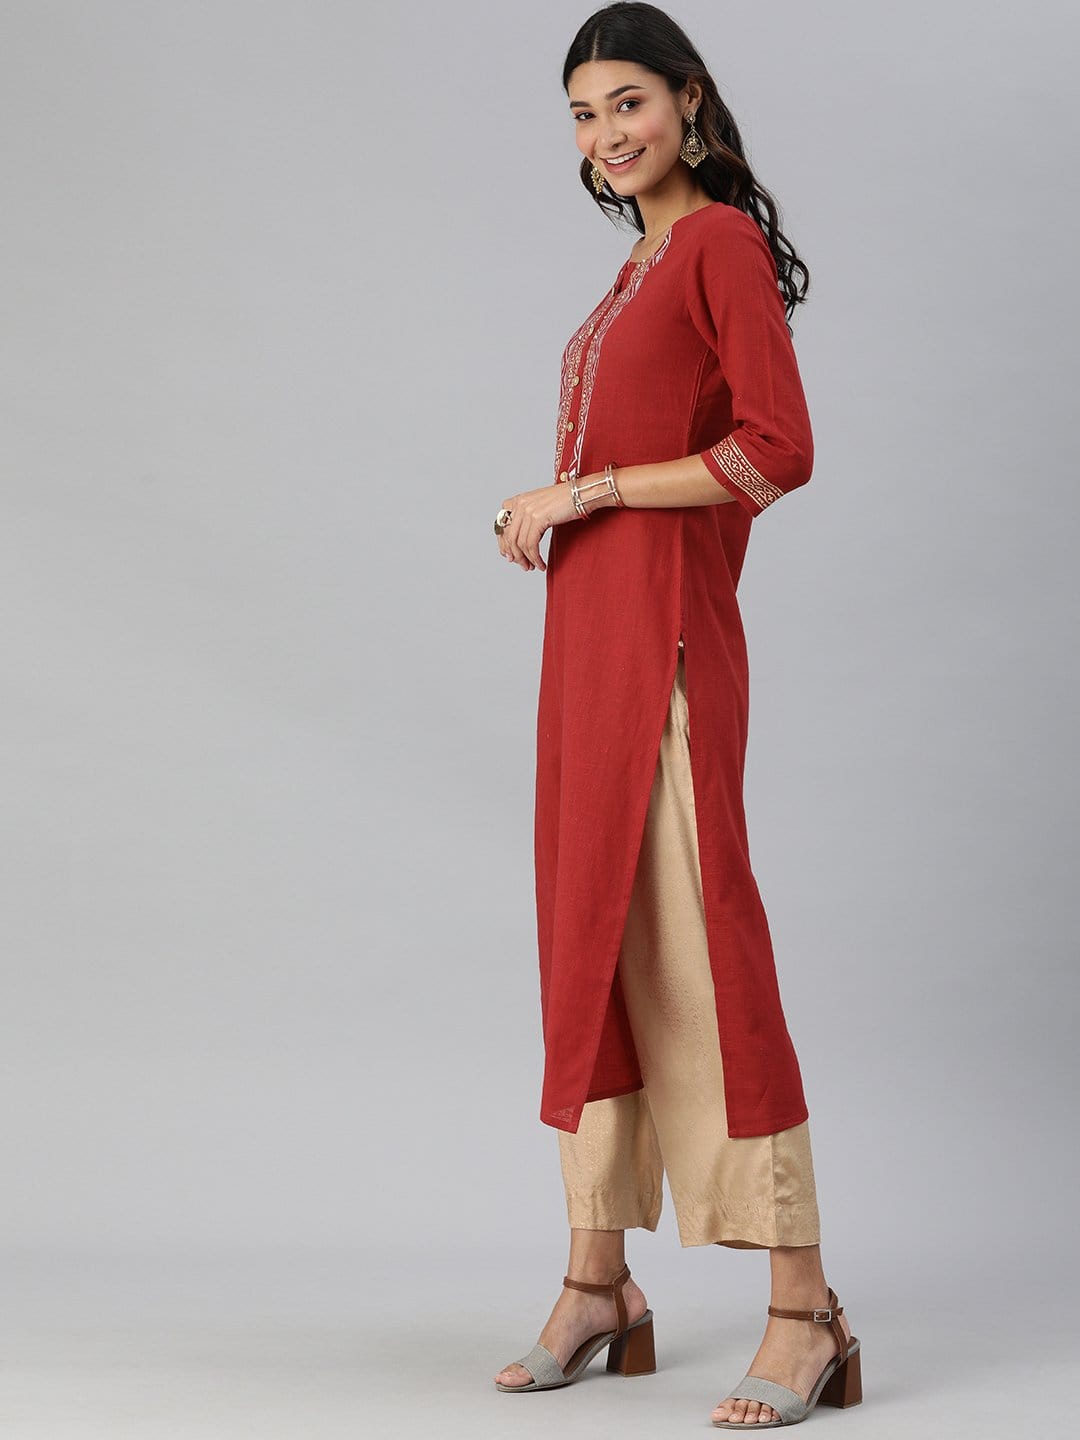 Women's KSUT Red And Gold Block Printed Straight Kurta With 3/4Th Sleeves - Varanga